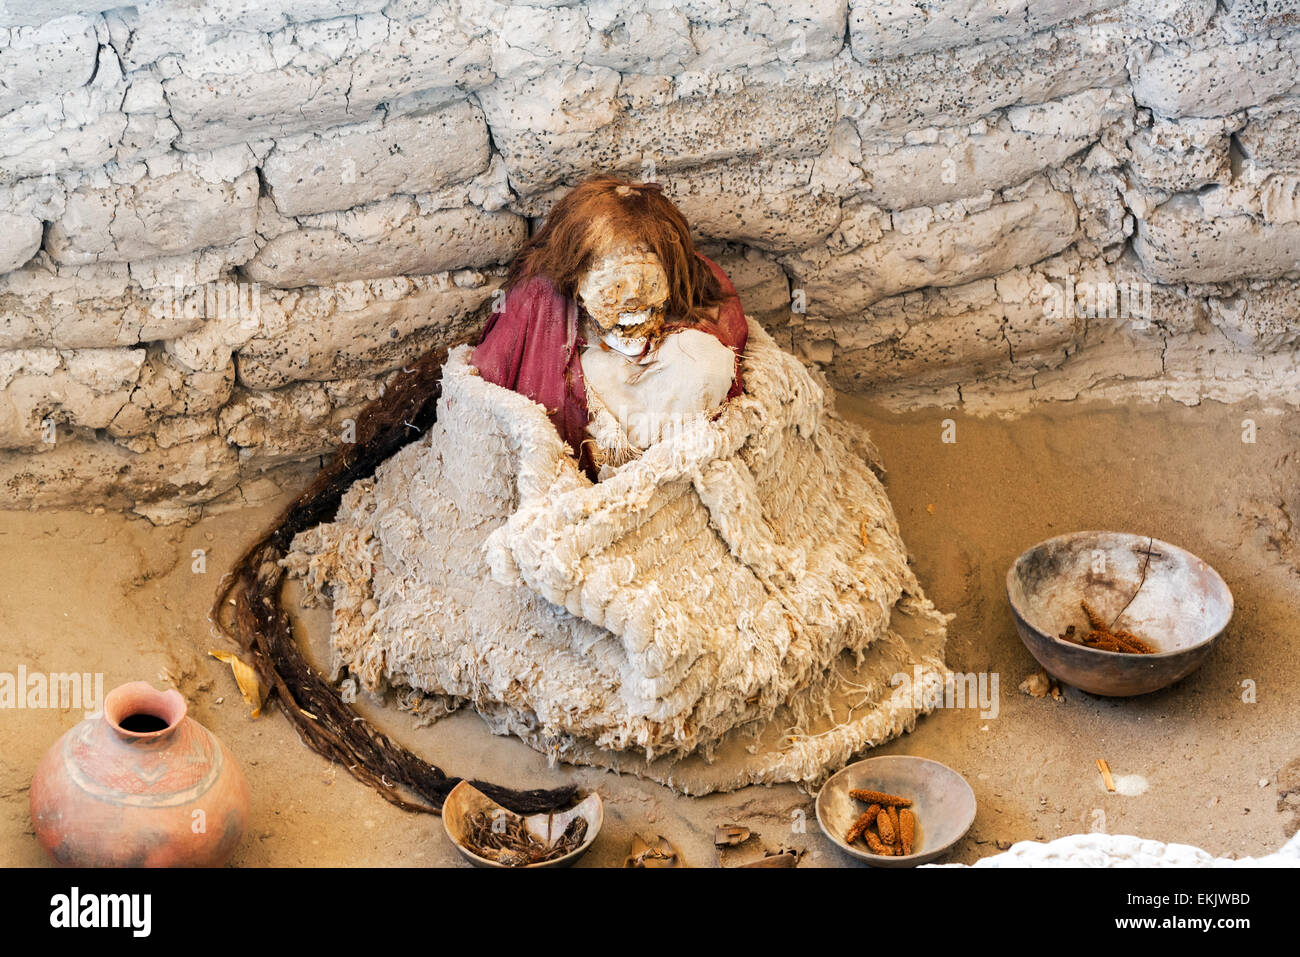 La momie de Chauchilla dans la culture Nazca, Pérou Banque D'Images